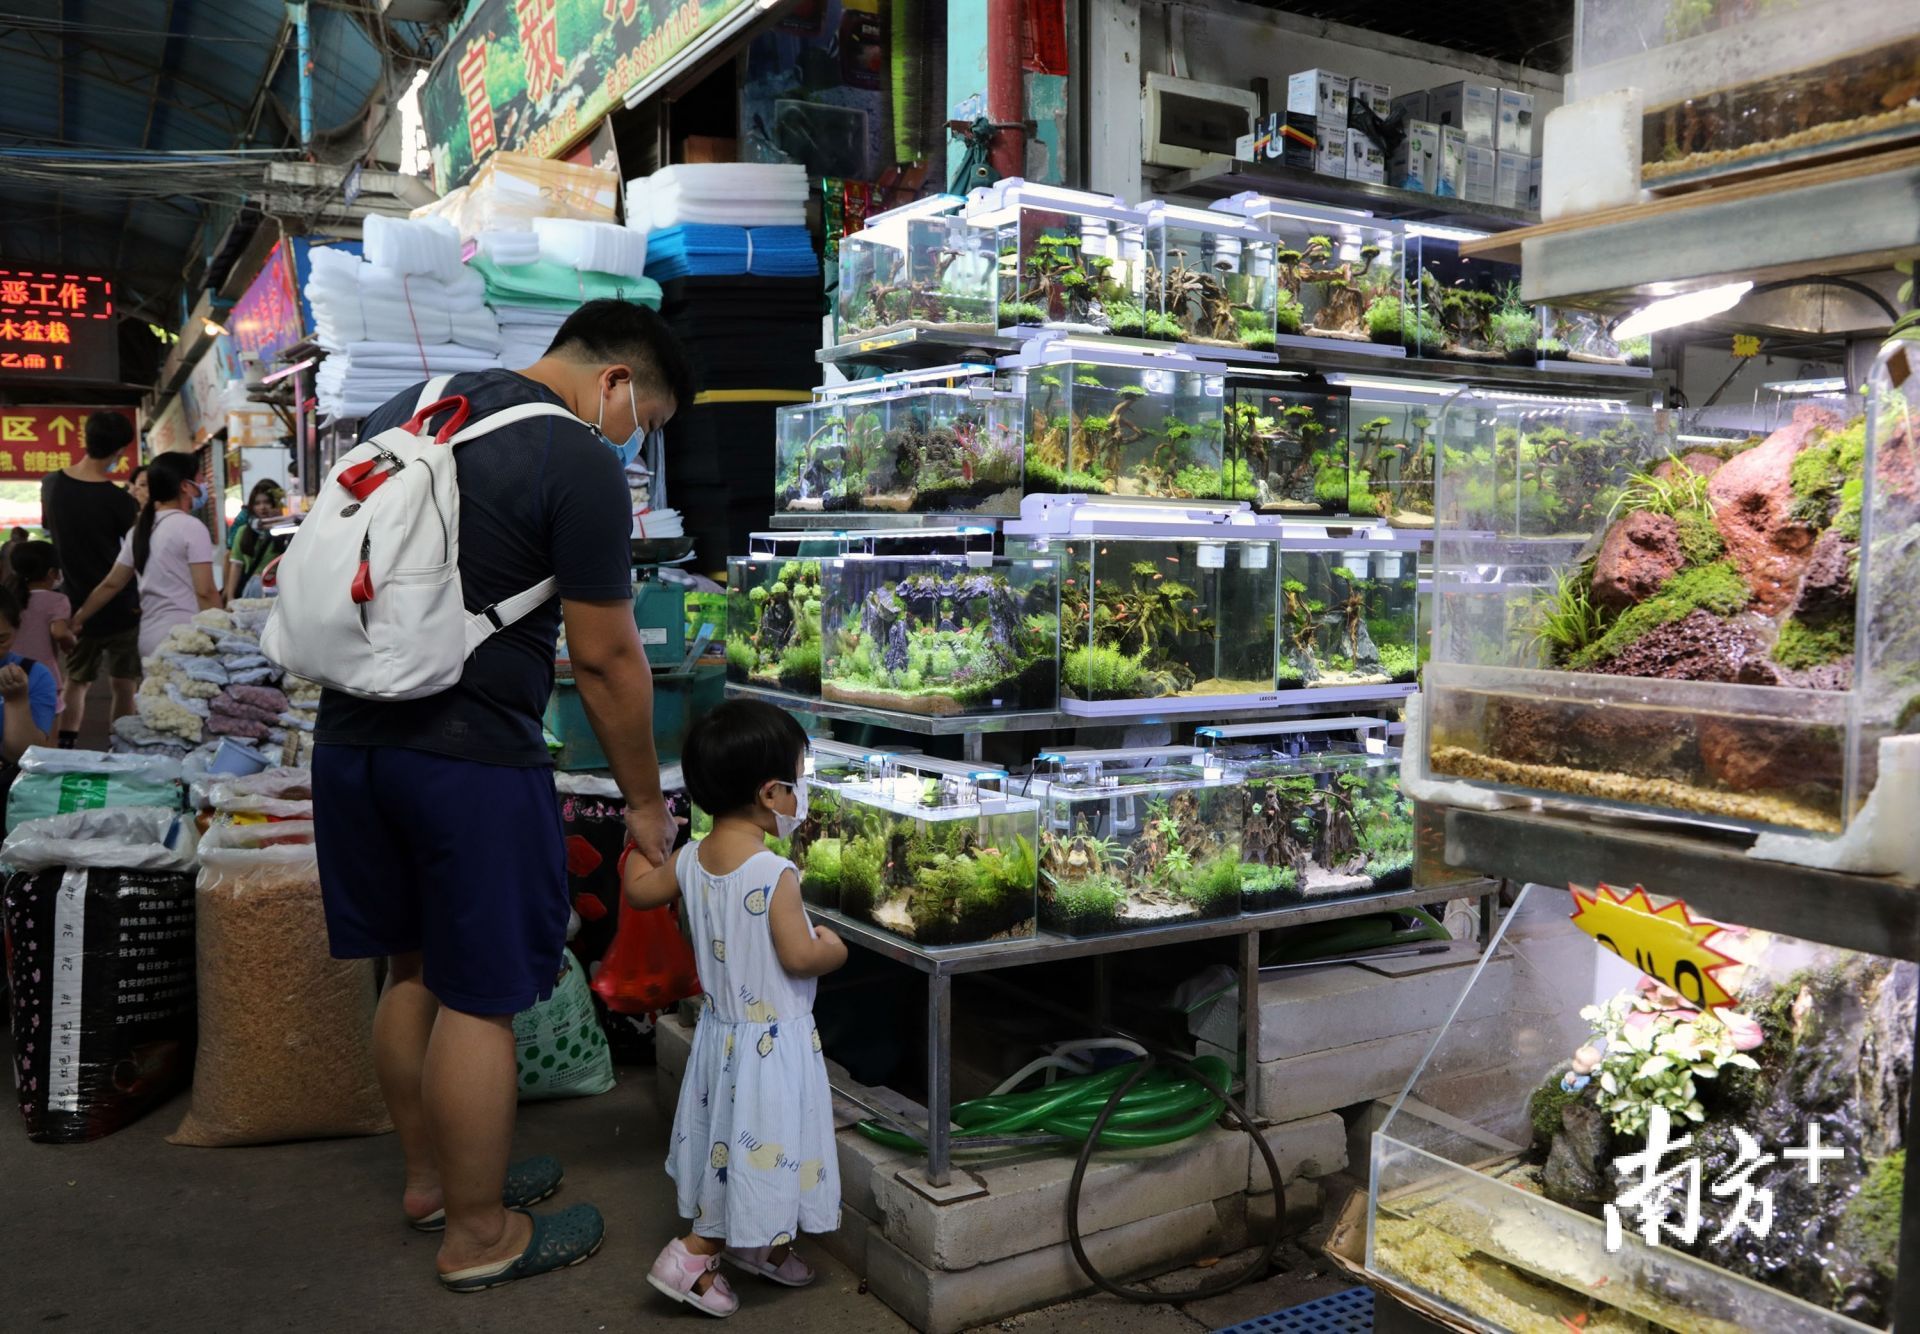 广州芳村花鸟市场已经搬到哪里去了啊：广州芳村花鸟鱼虫市场已经搬迁到了广州花卉博览园